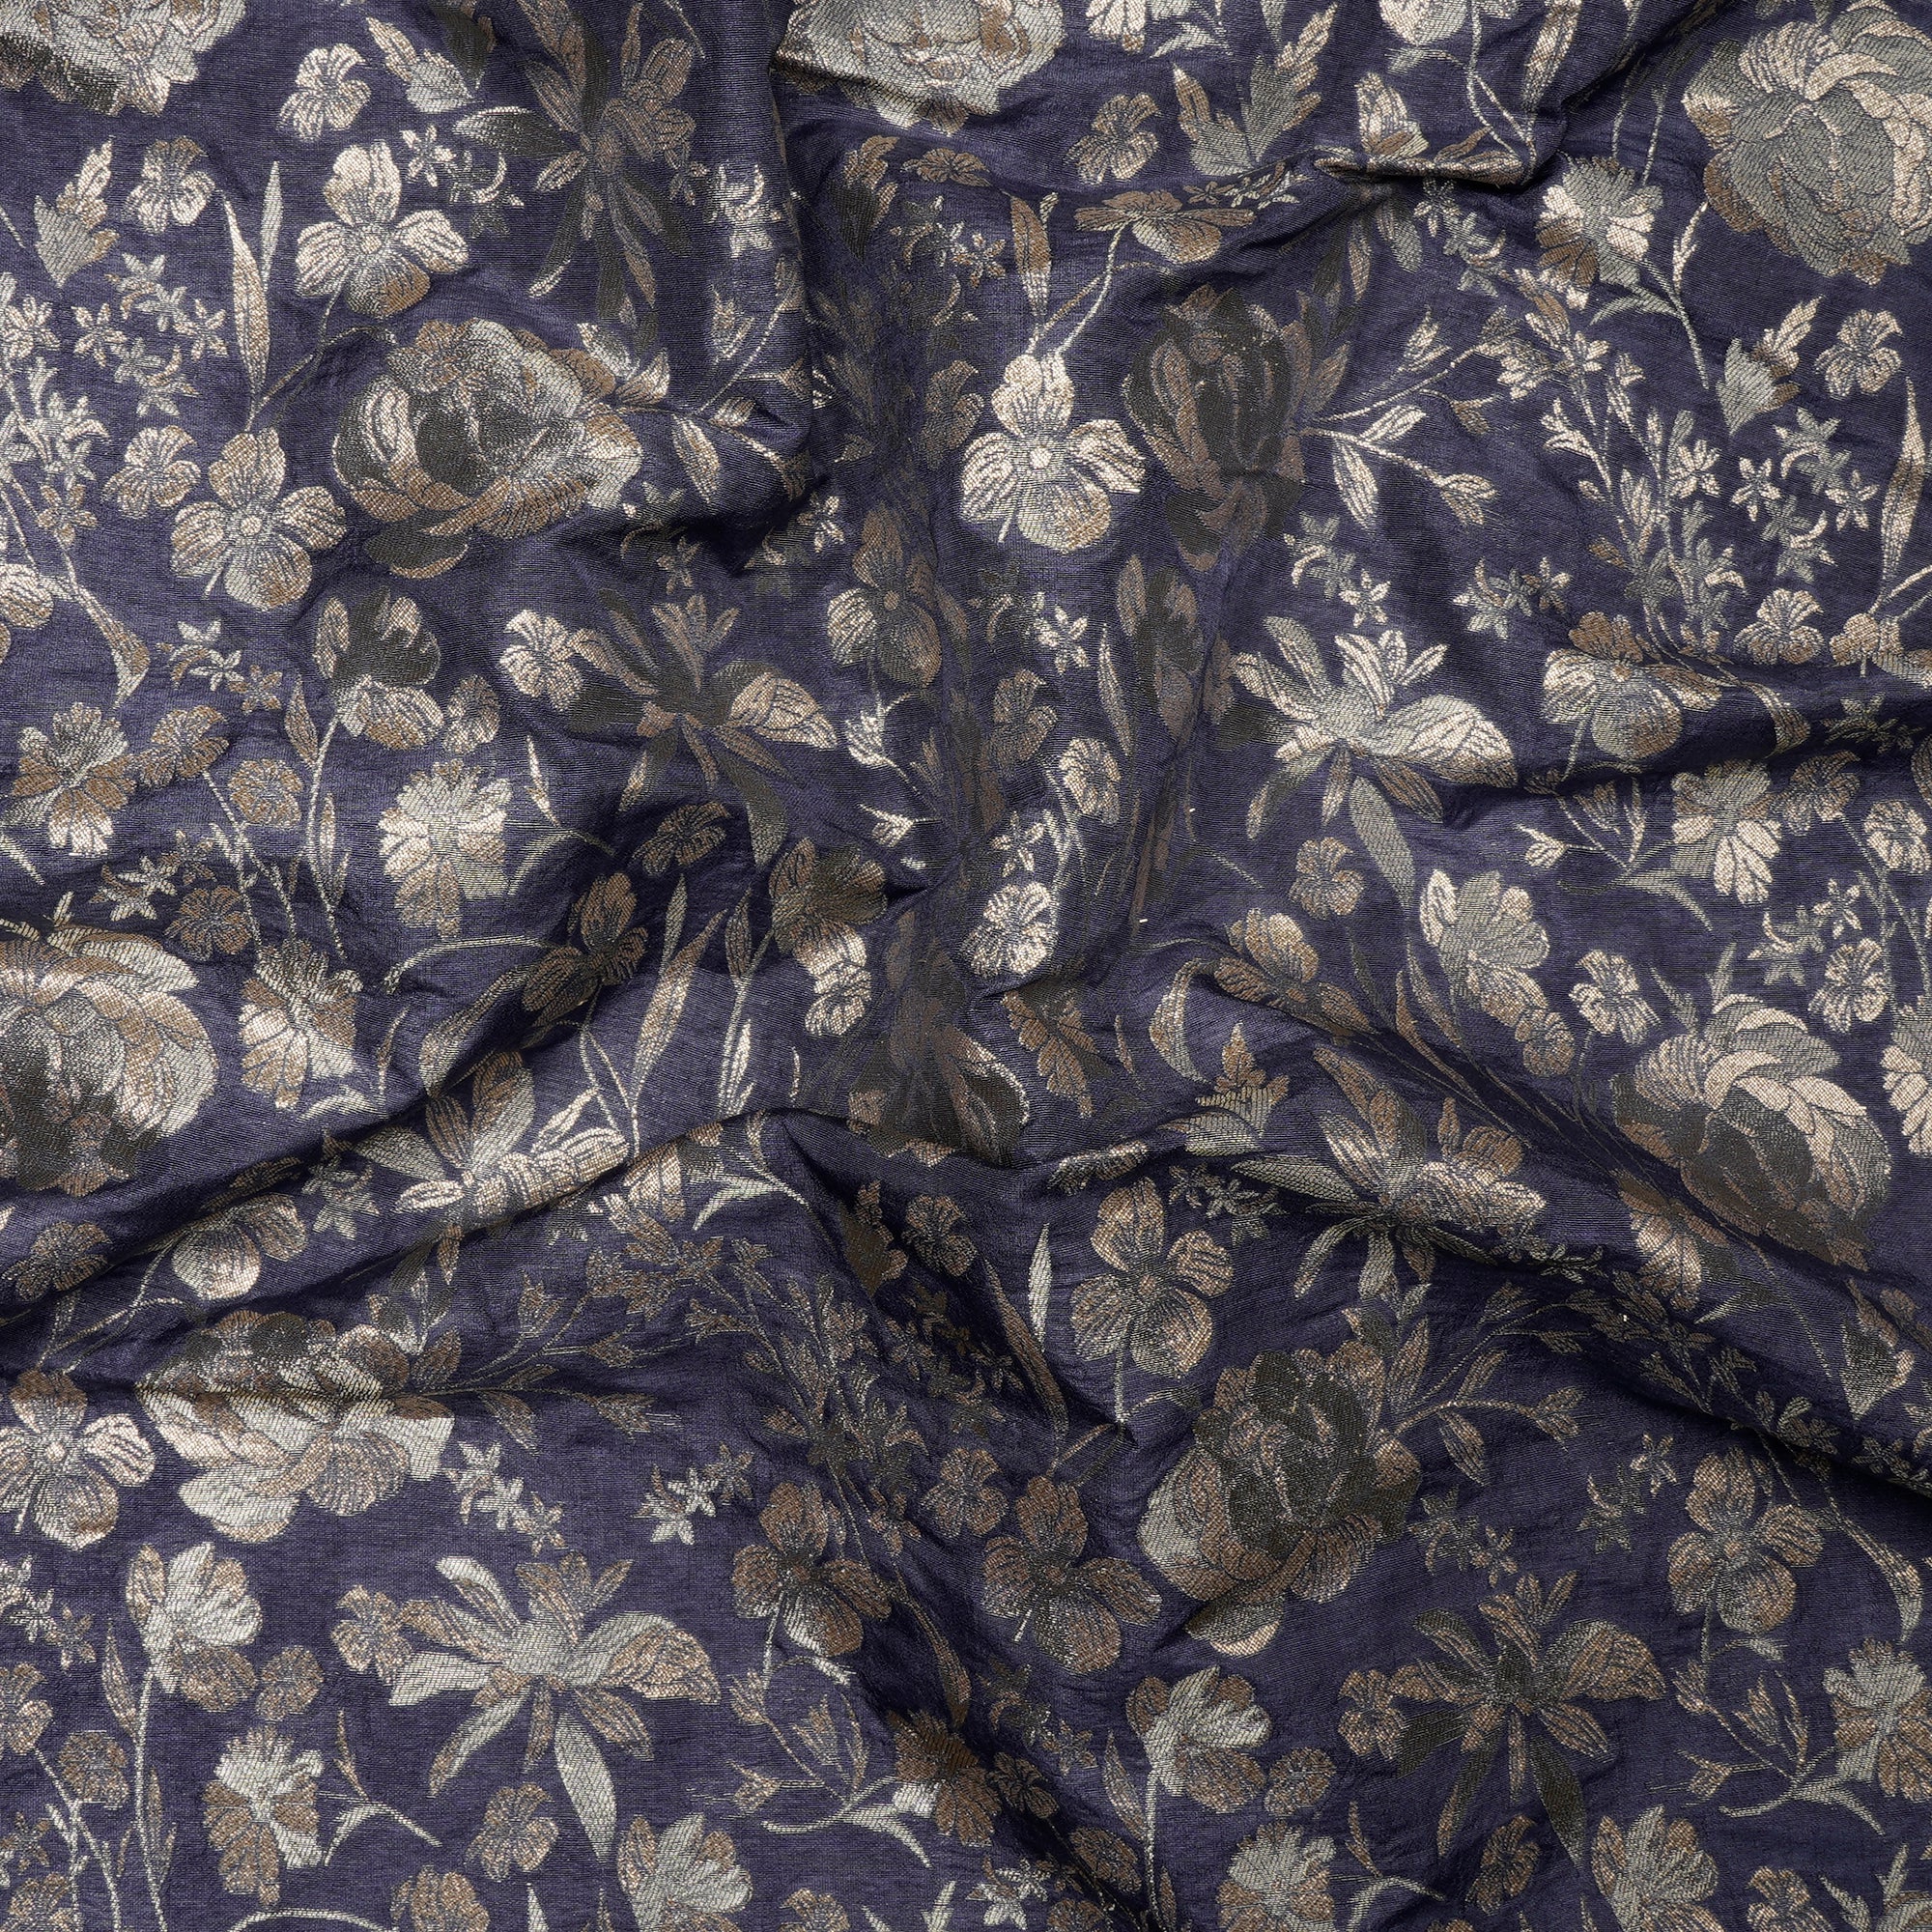 Velvet Morning All Over Floral Pattern Blended Banarasi Brocade Fabric